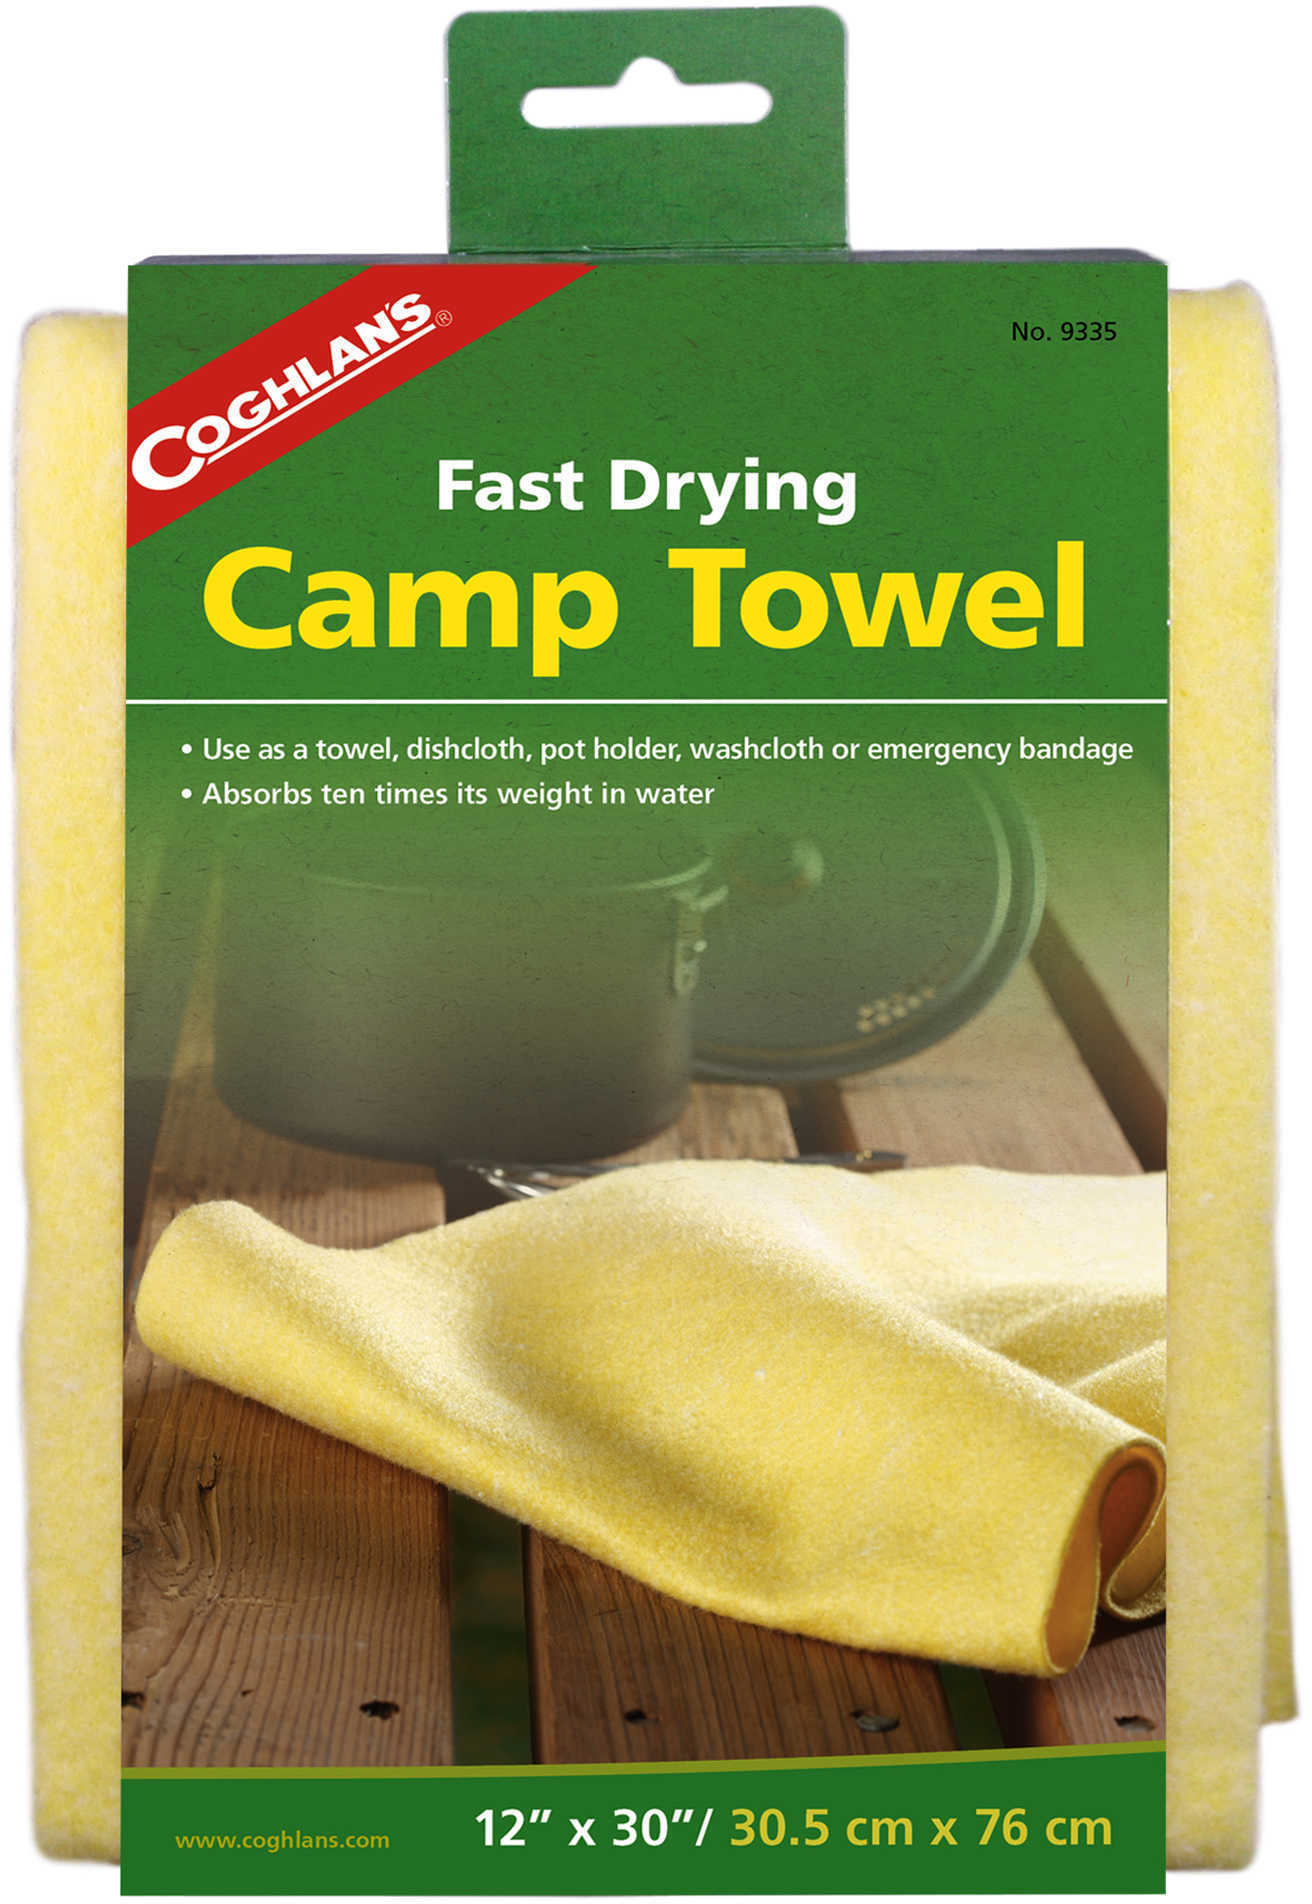 Coghlans Camp Towel )Size 30" x 12")